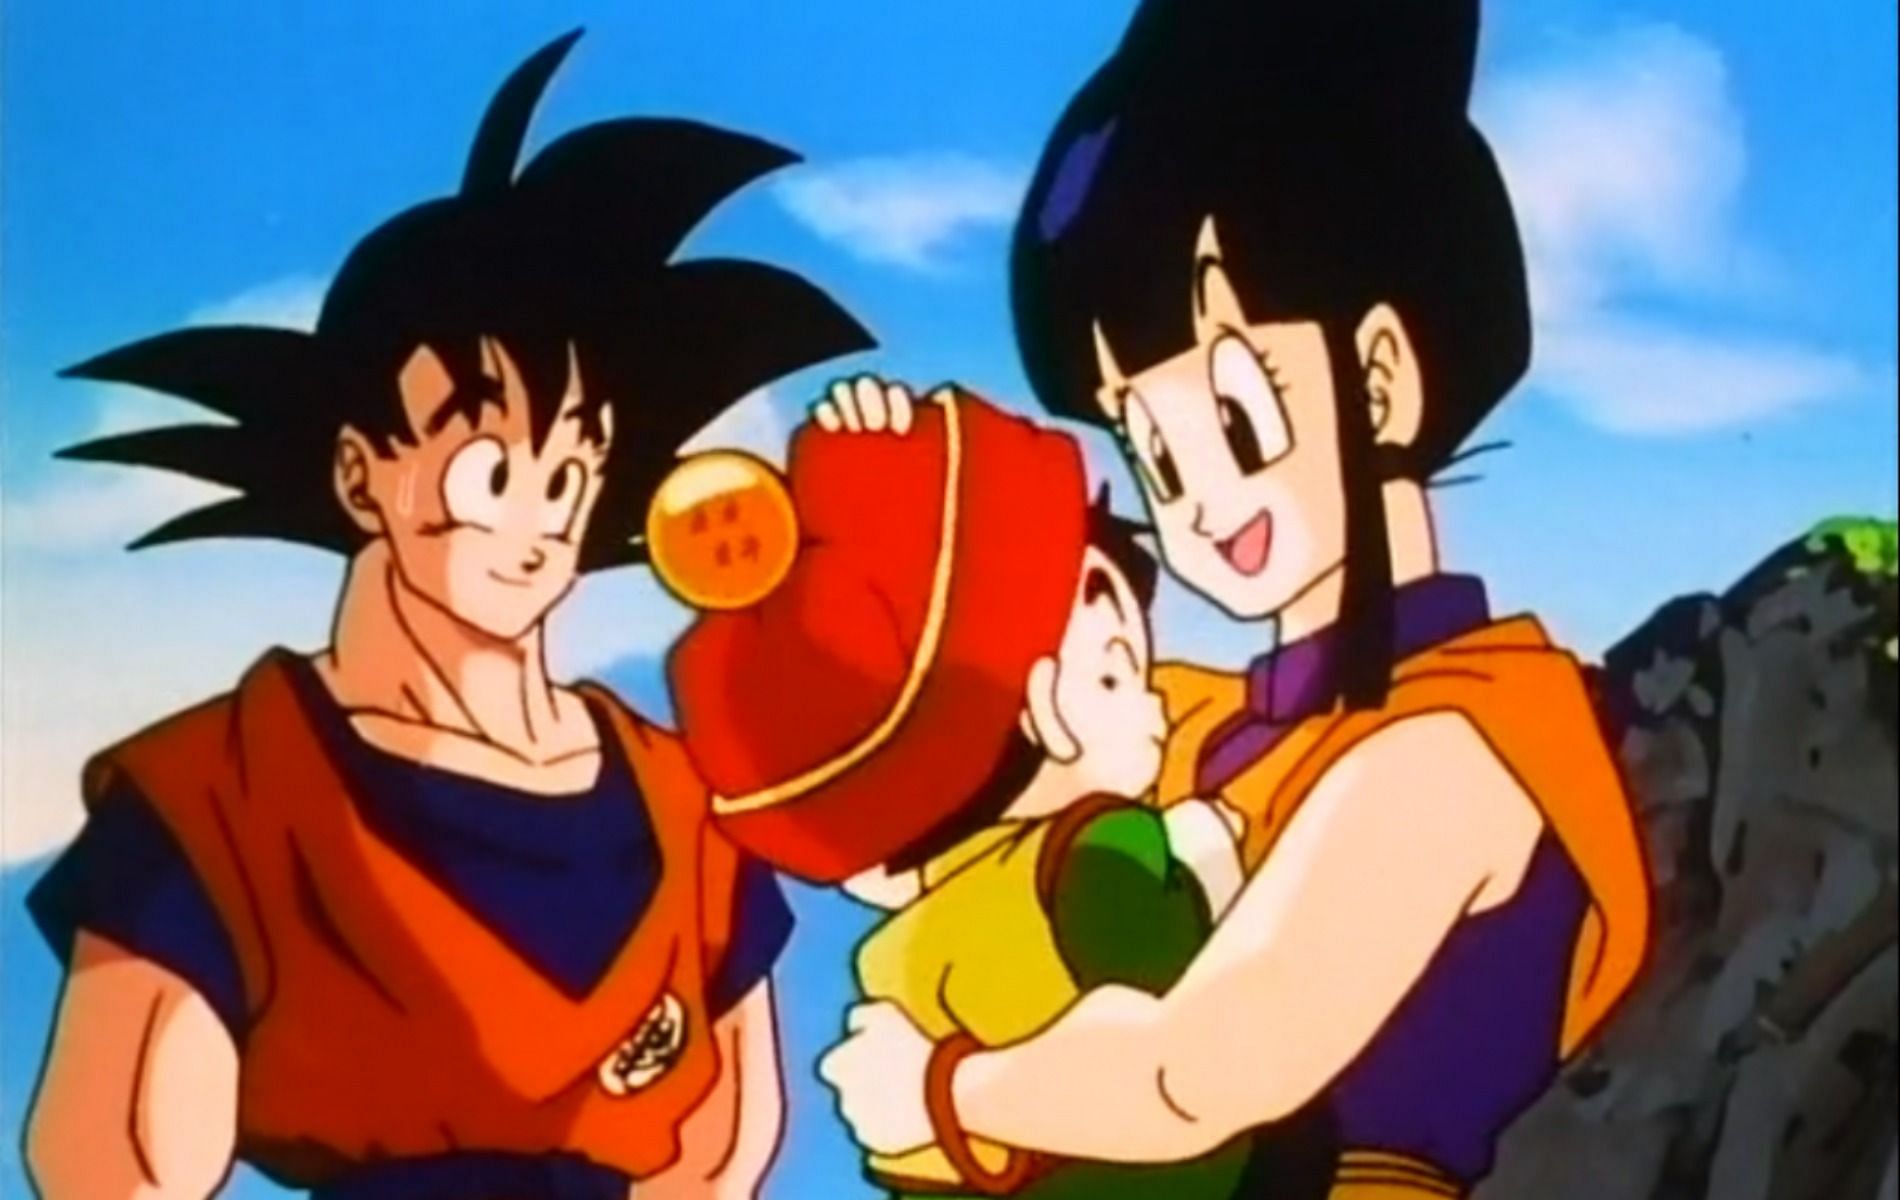 Goku and Chichi (Image via Dragon Ball Z)